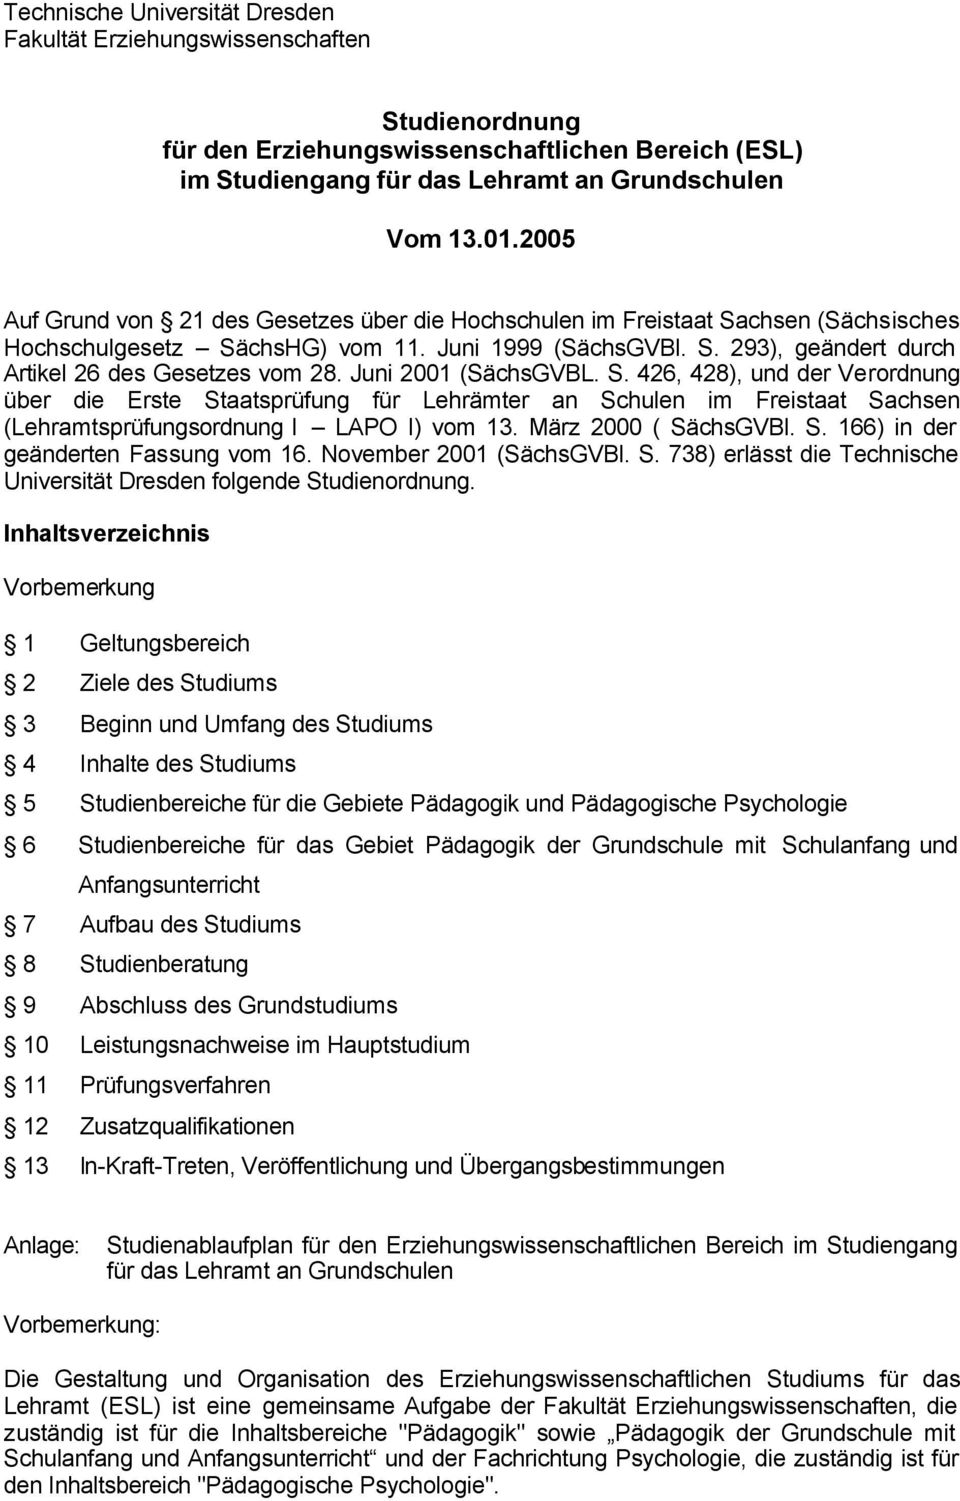 Juni 2001 (SächsGVBL. S. 426, 428), und der Verordnung über die Erste Staatsprüfung für Lehrämter an Schulen im Freistaat Sachsen (Lehramtsprüfungsordnung I LAPO I) vom 13. März 2000 ( SächsGVBl. S. 166) in der geänderten Fassung vom 16.